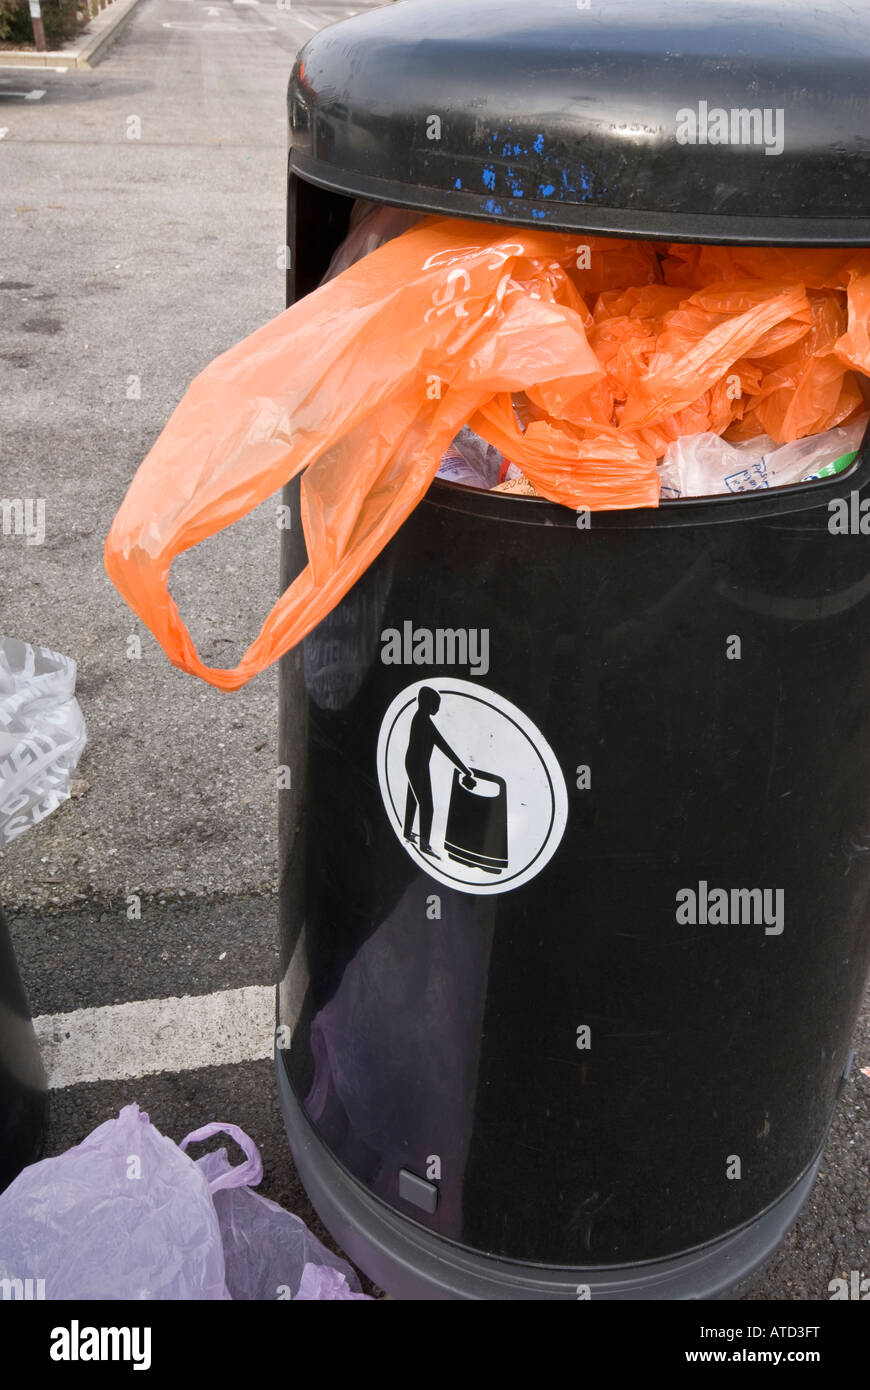 Orange plastic bag wast bin rubbish Stock Photo